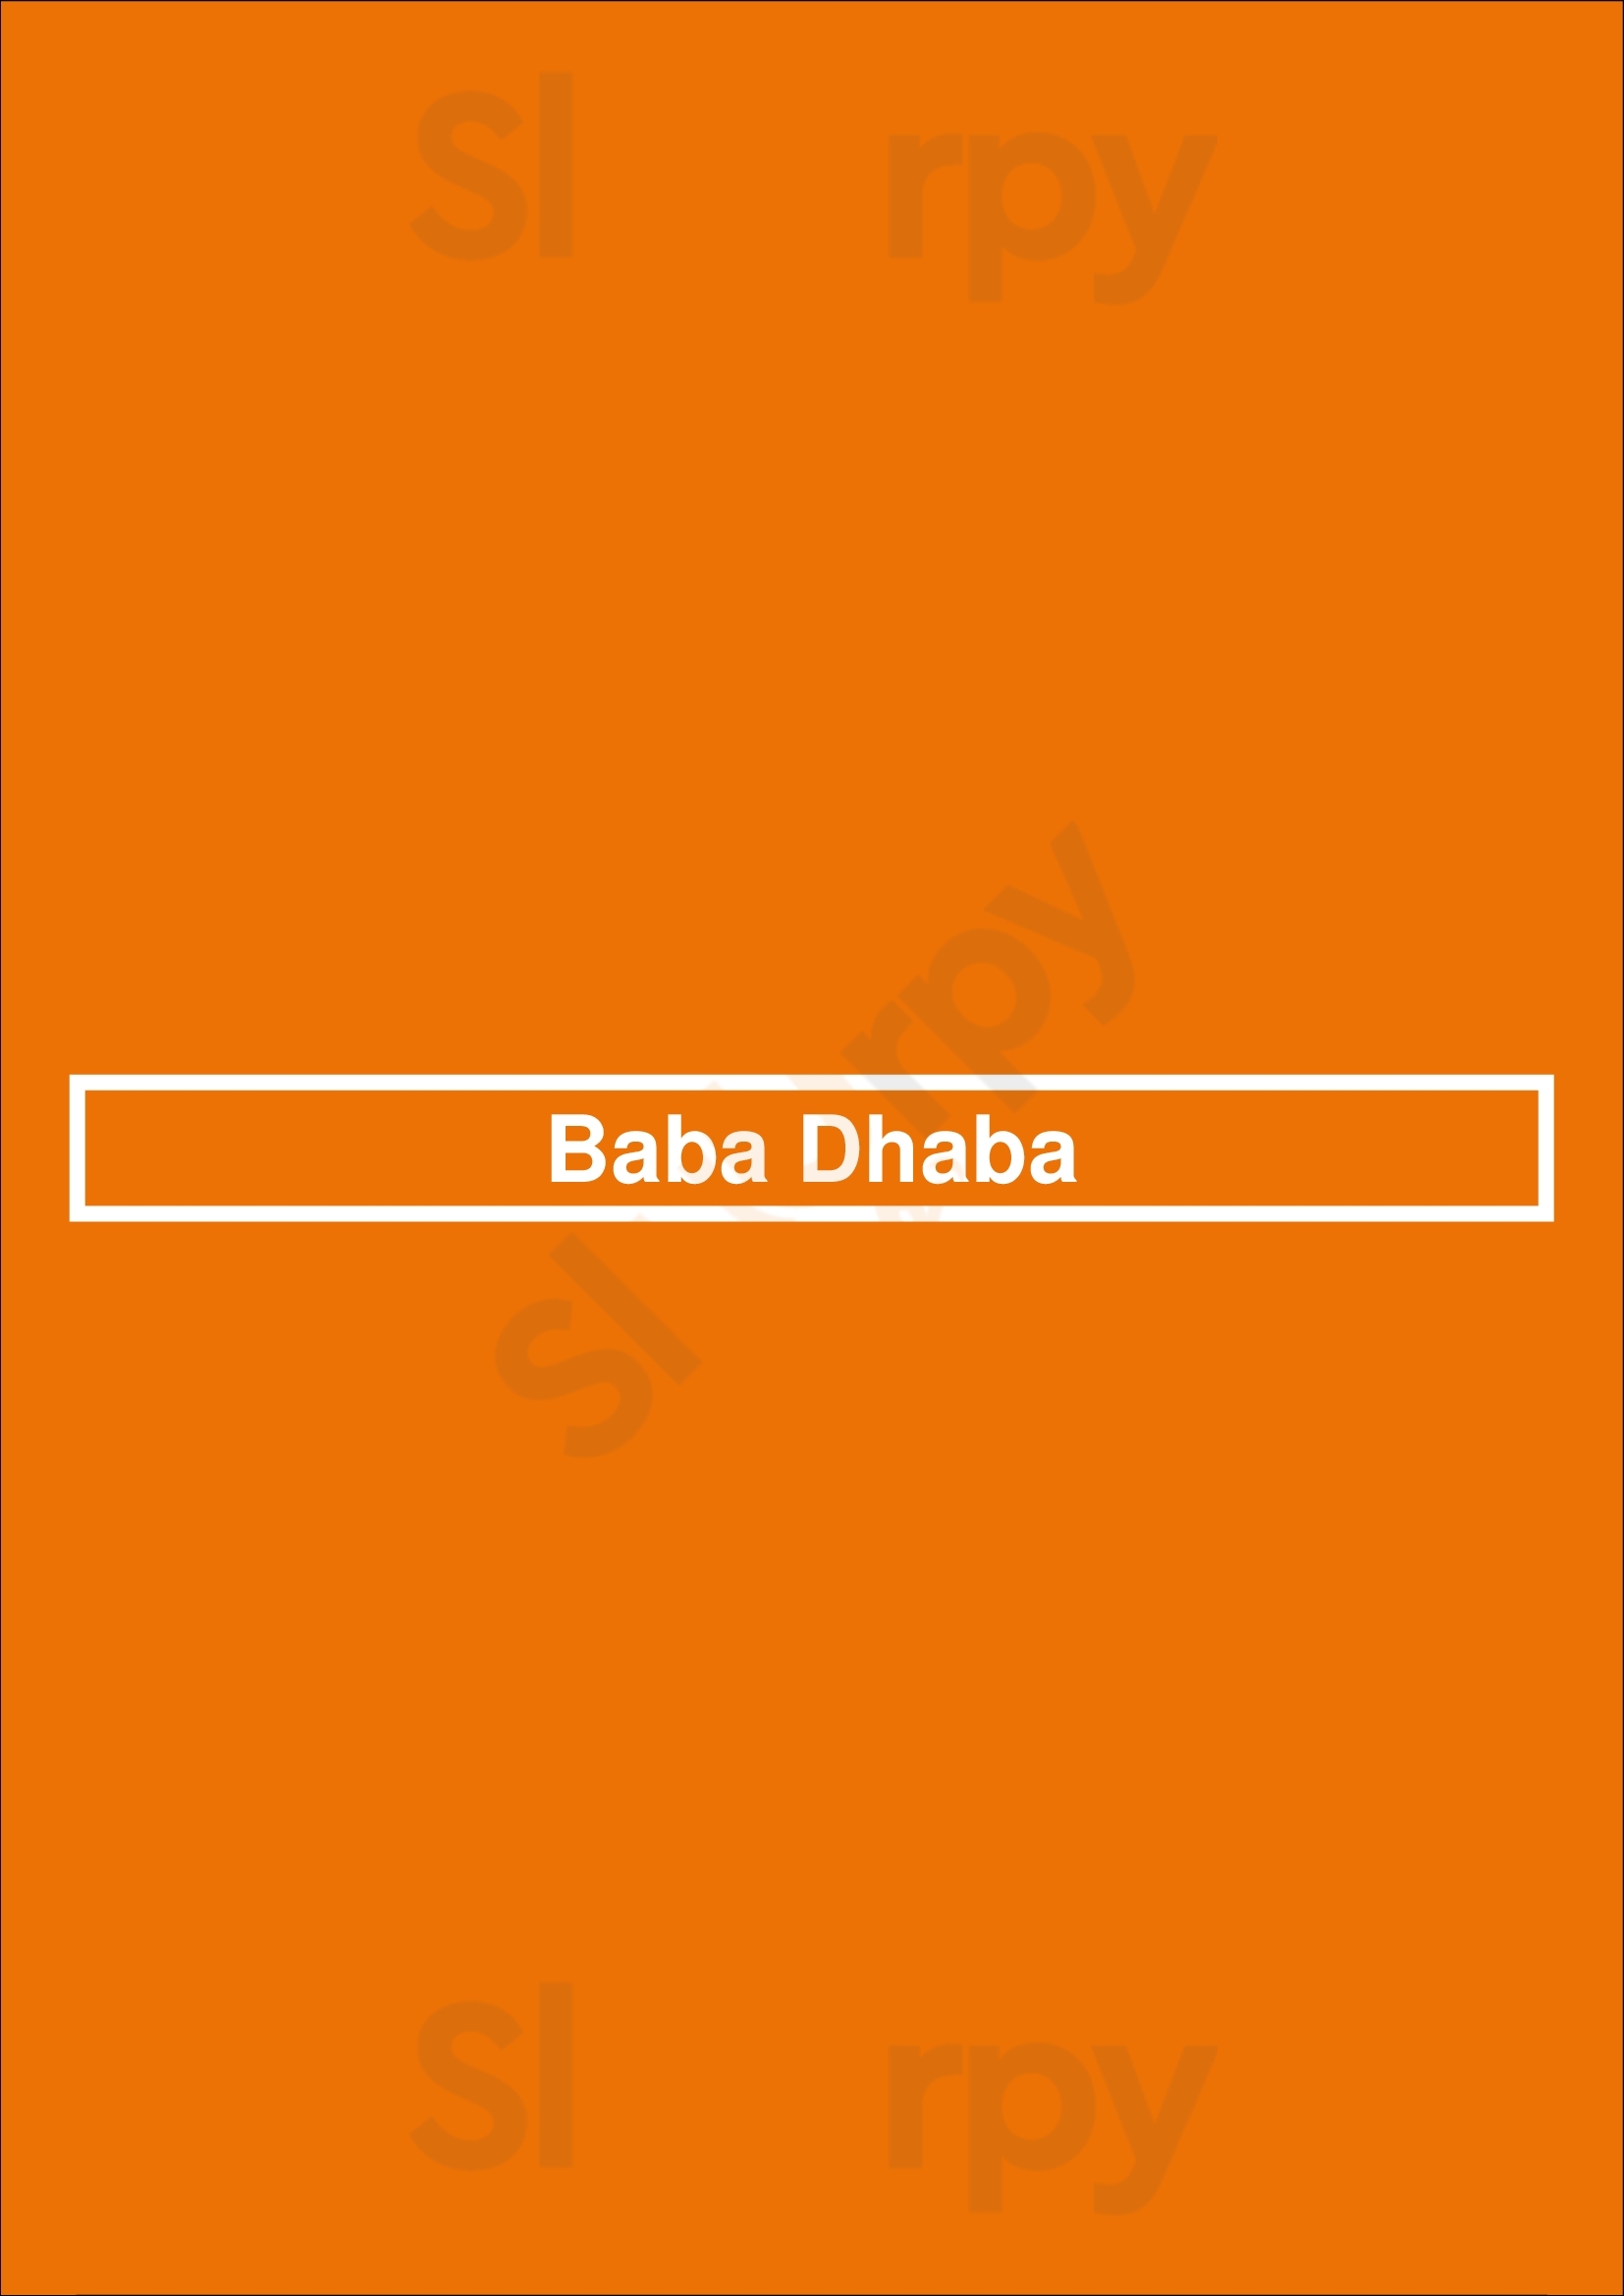 Baba Dhaba Brampton Menu - 1